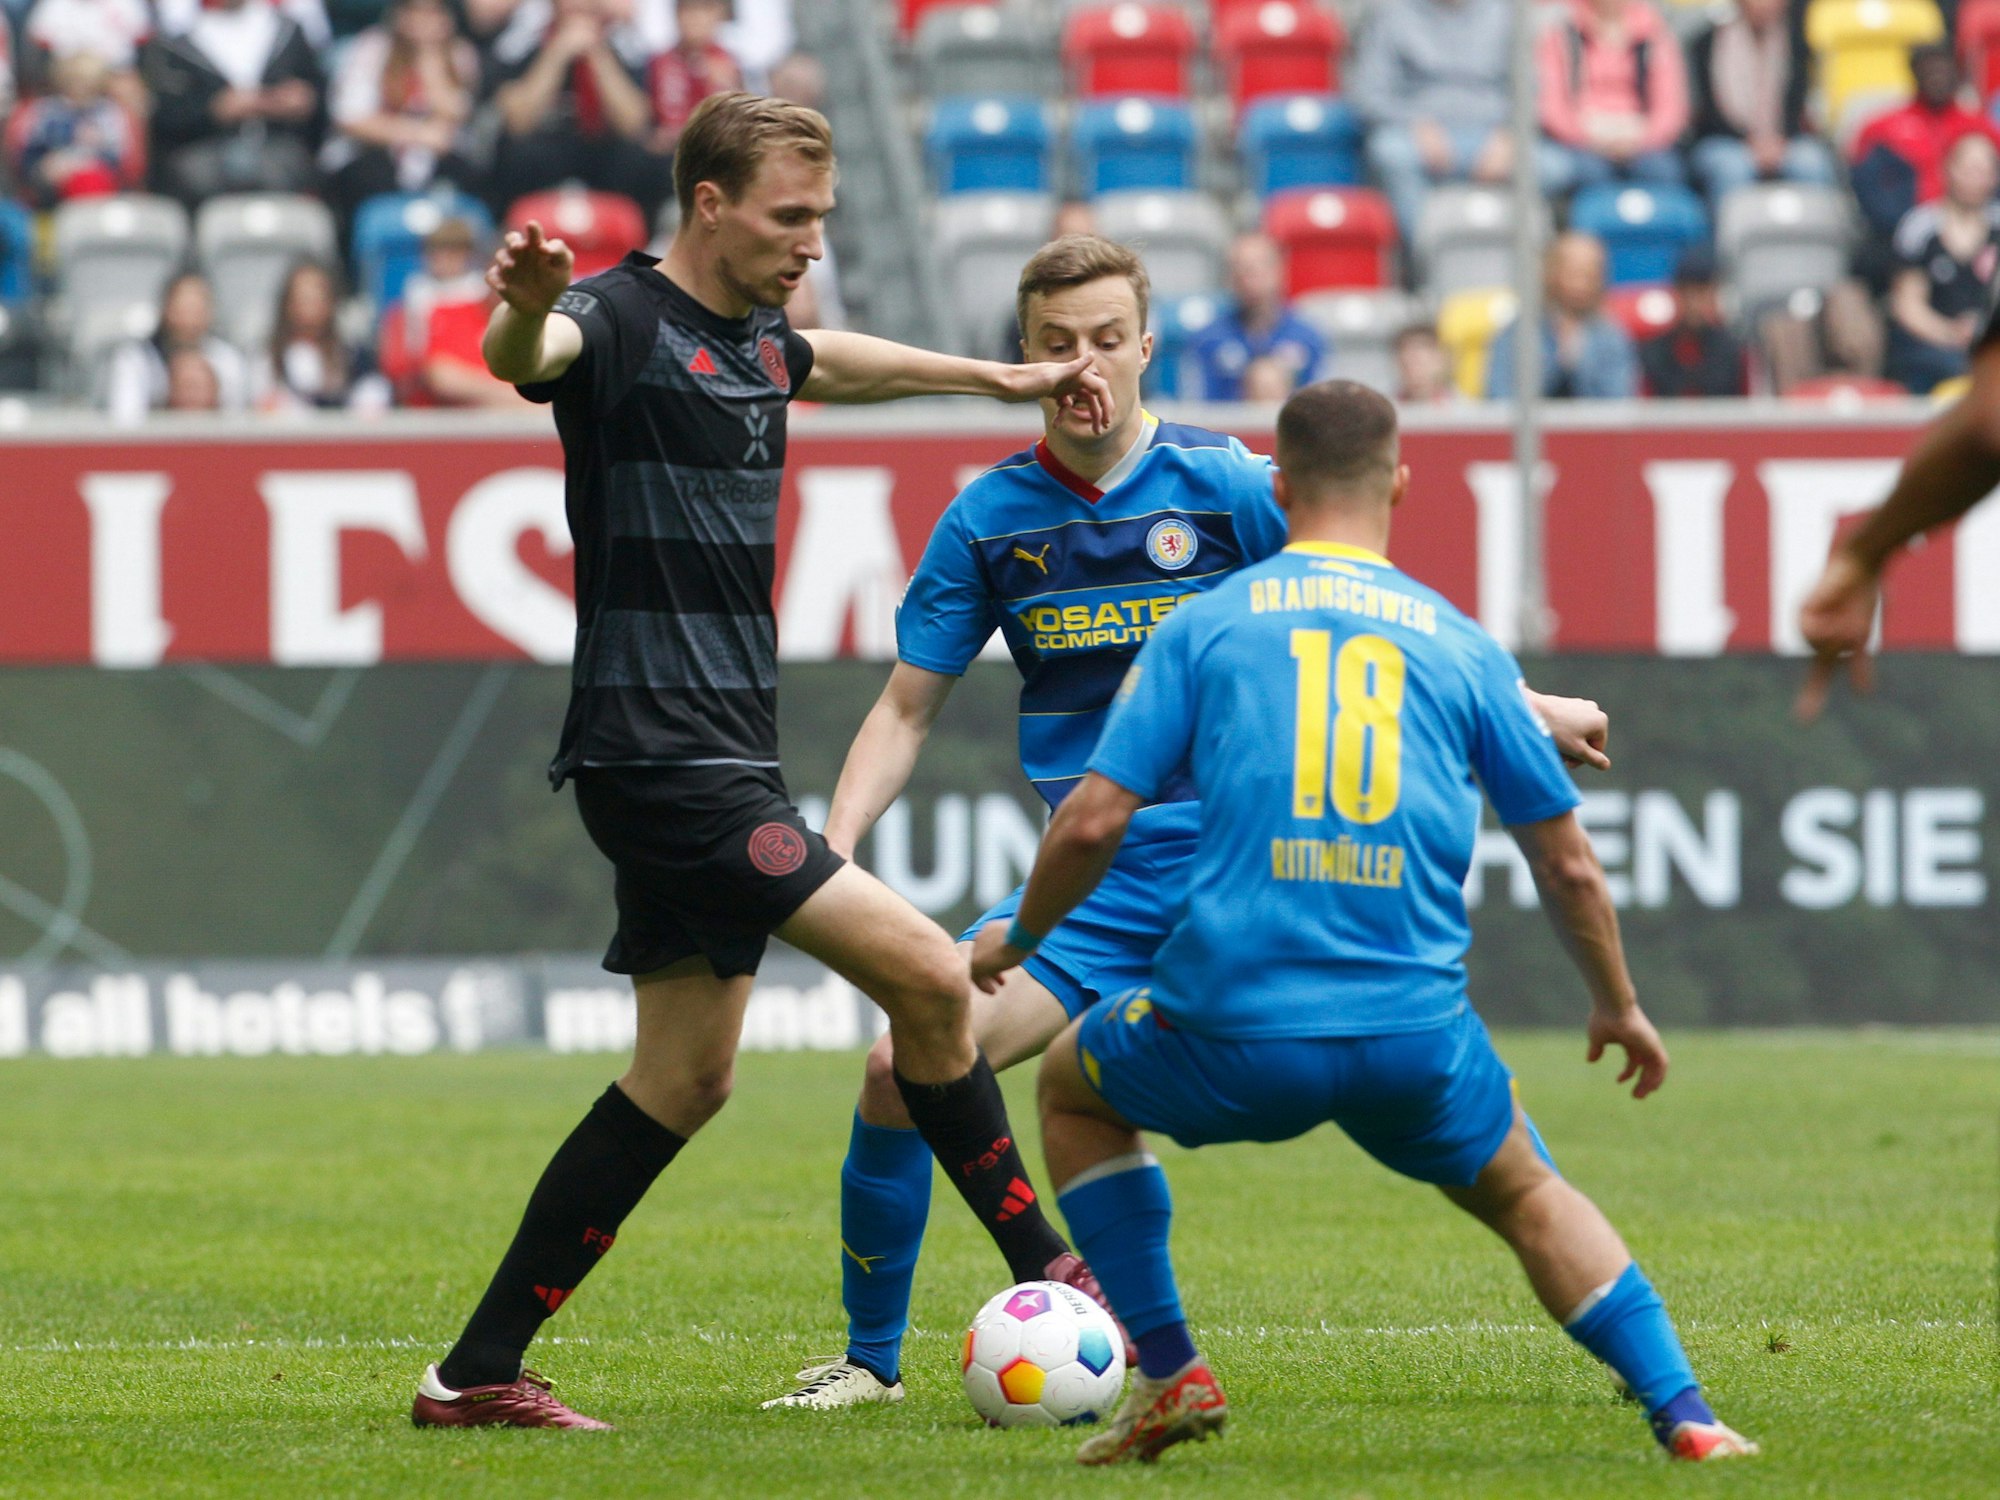 Fortuna Düsseldorfs Vincent Vermeij und der Braunschweiger Marvin Rittmüller kämpfen um den Ball.